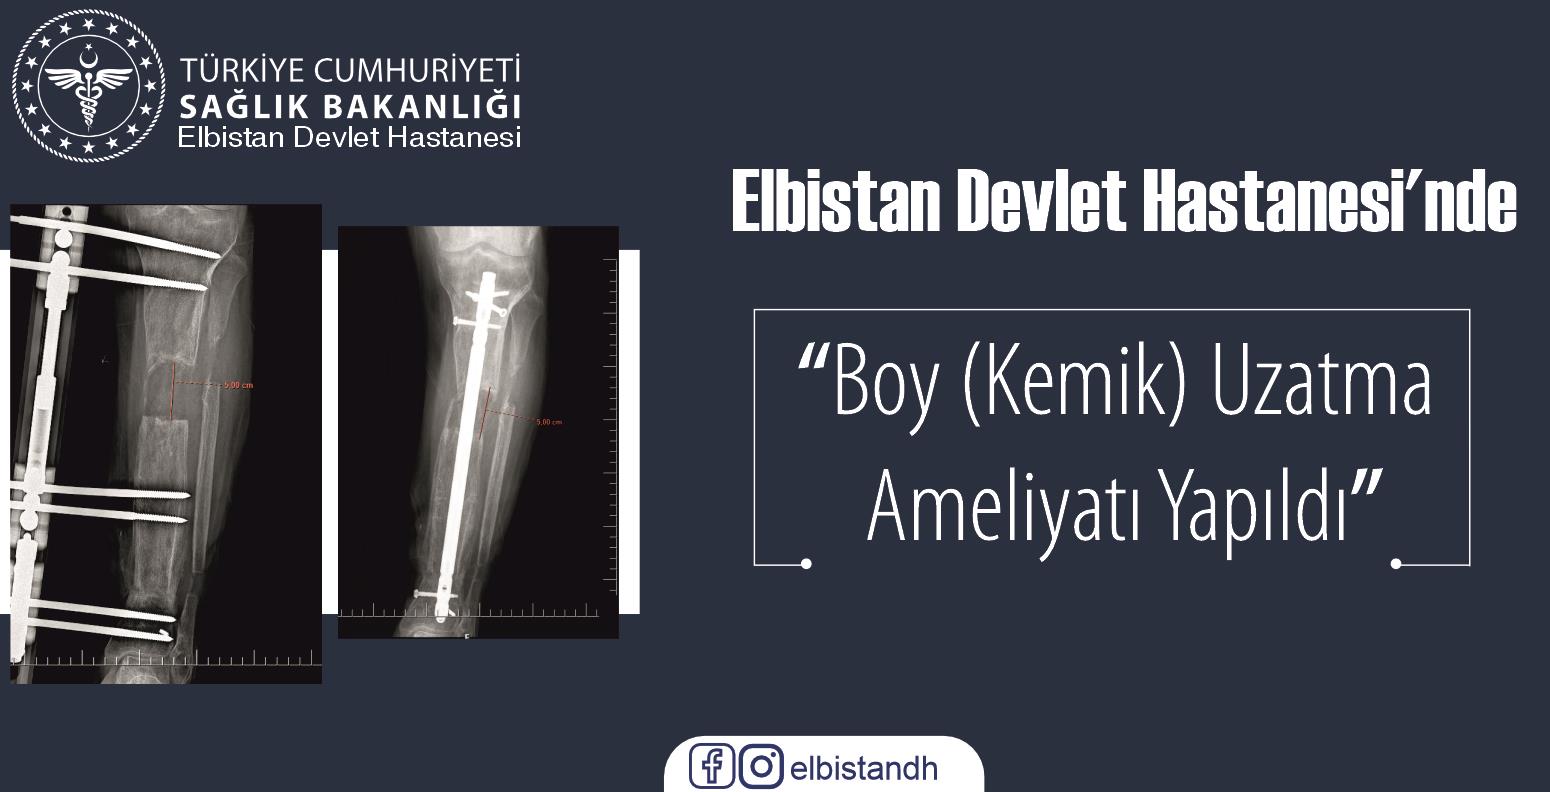 Elbistan Devlet Hastanesi’nde Boy (Kemik) Uzatma Ameliyatı Yapıldı